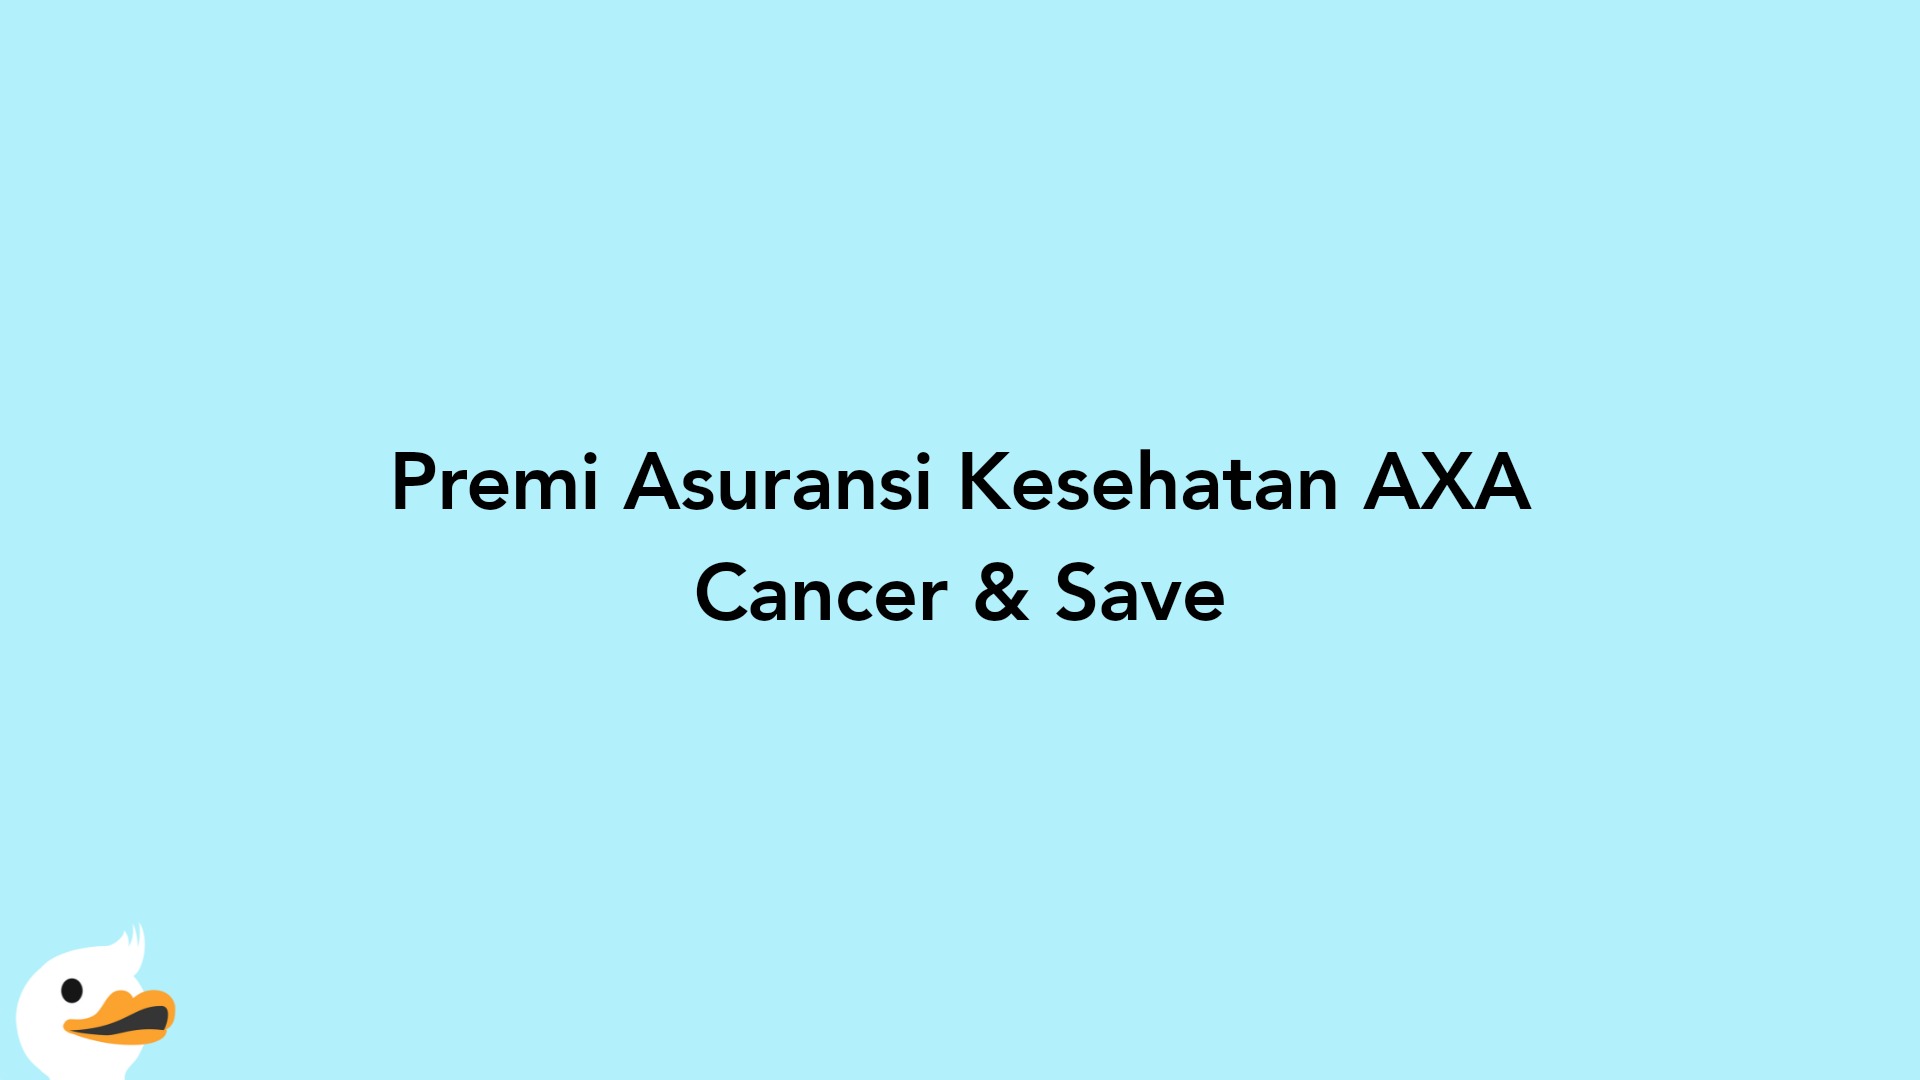 Premi Asuransi Kesehatan AXA Cancer & Save